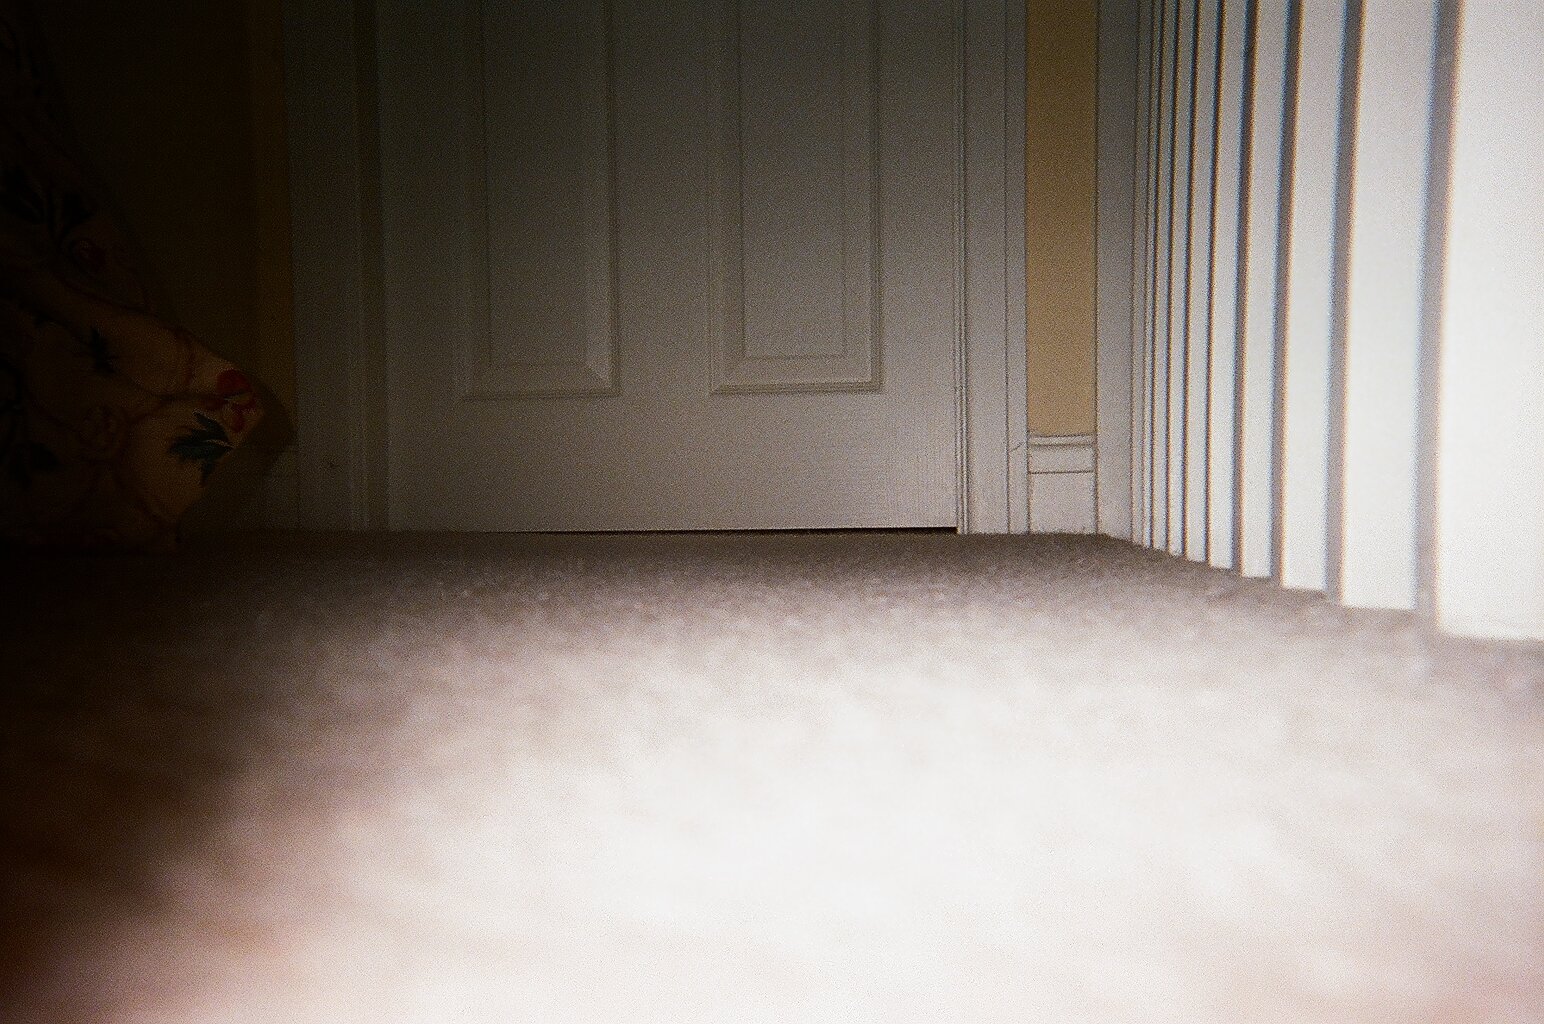 Carpet and door